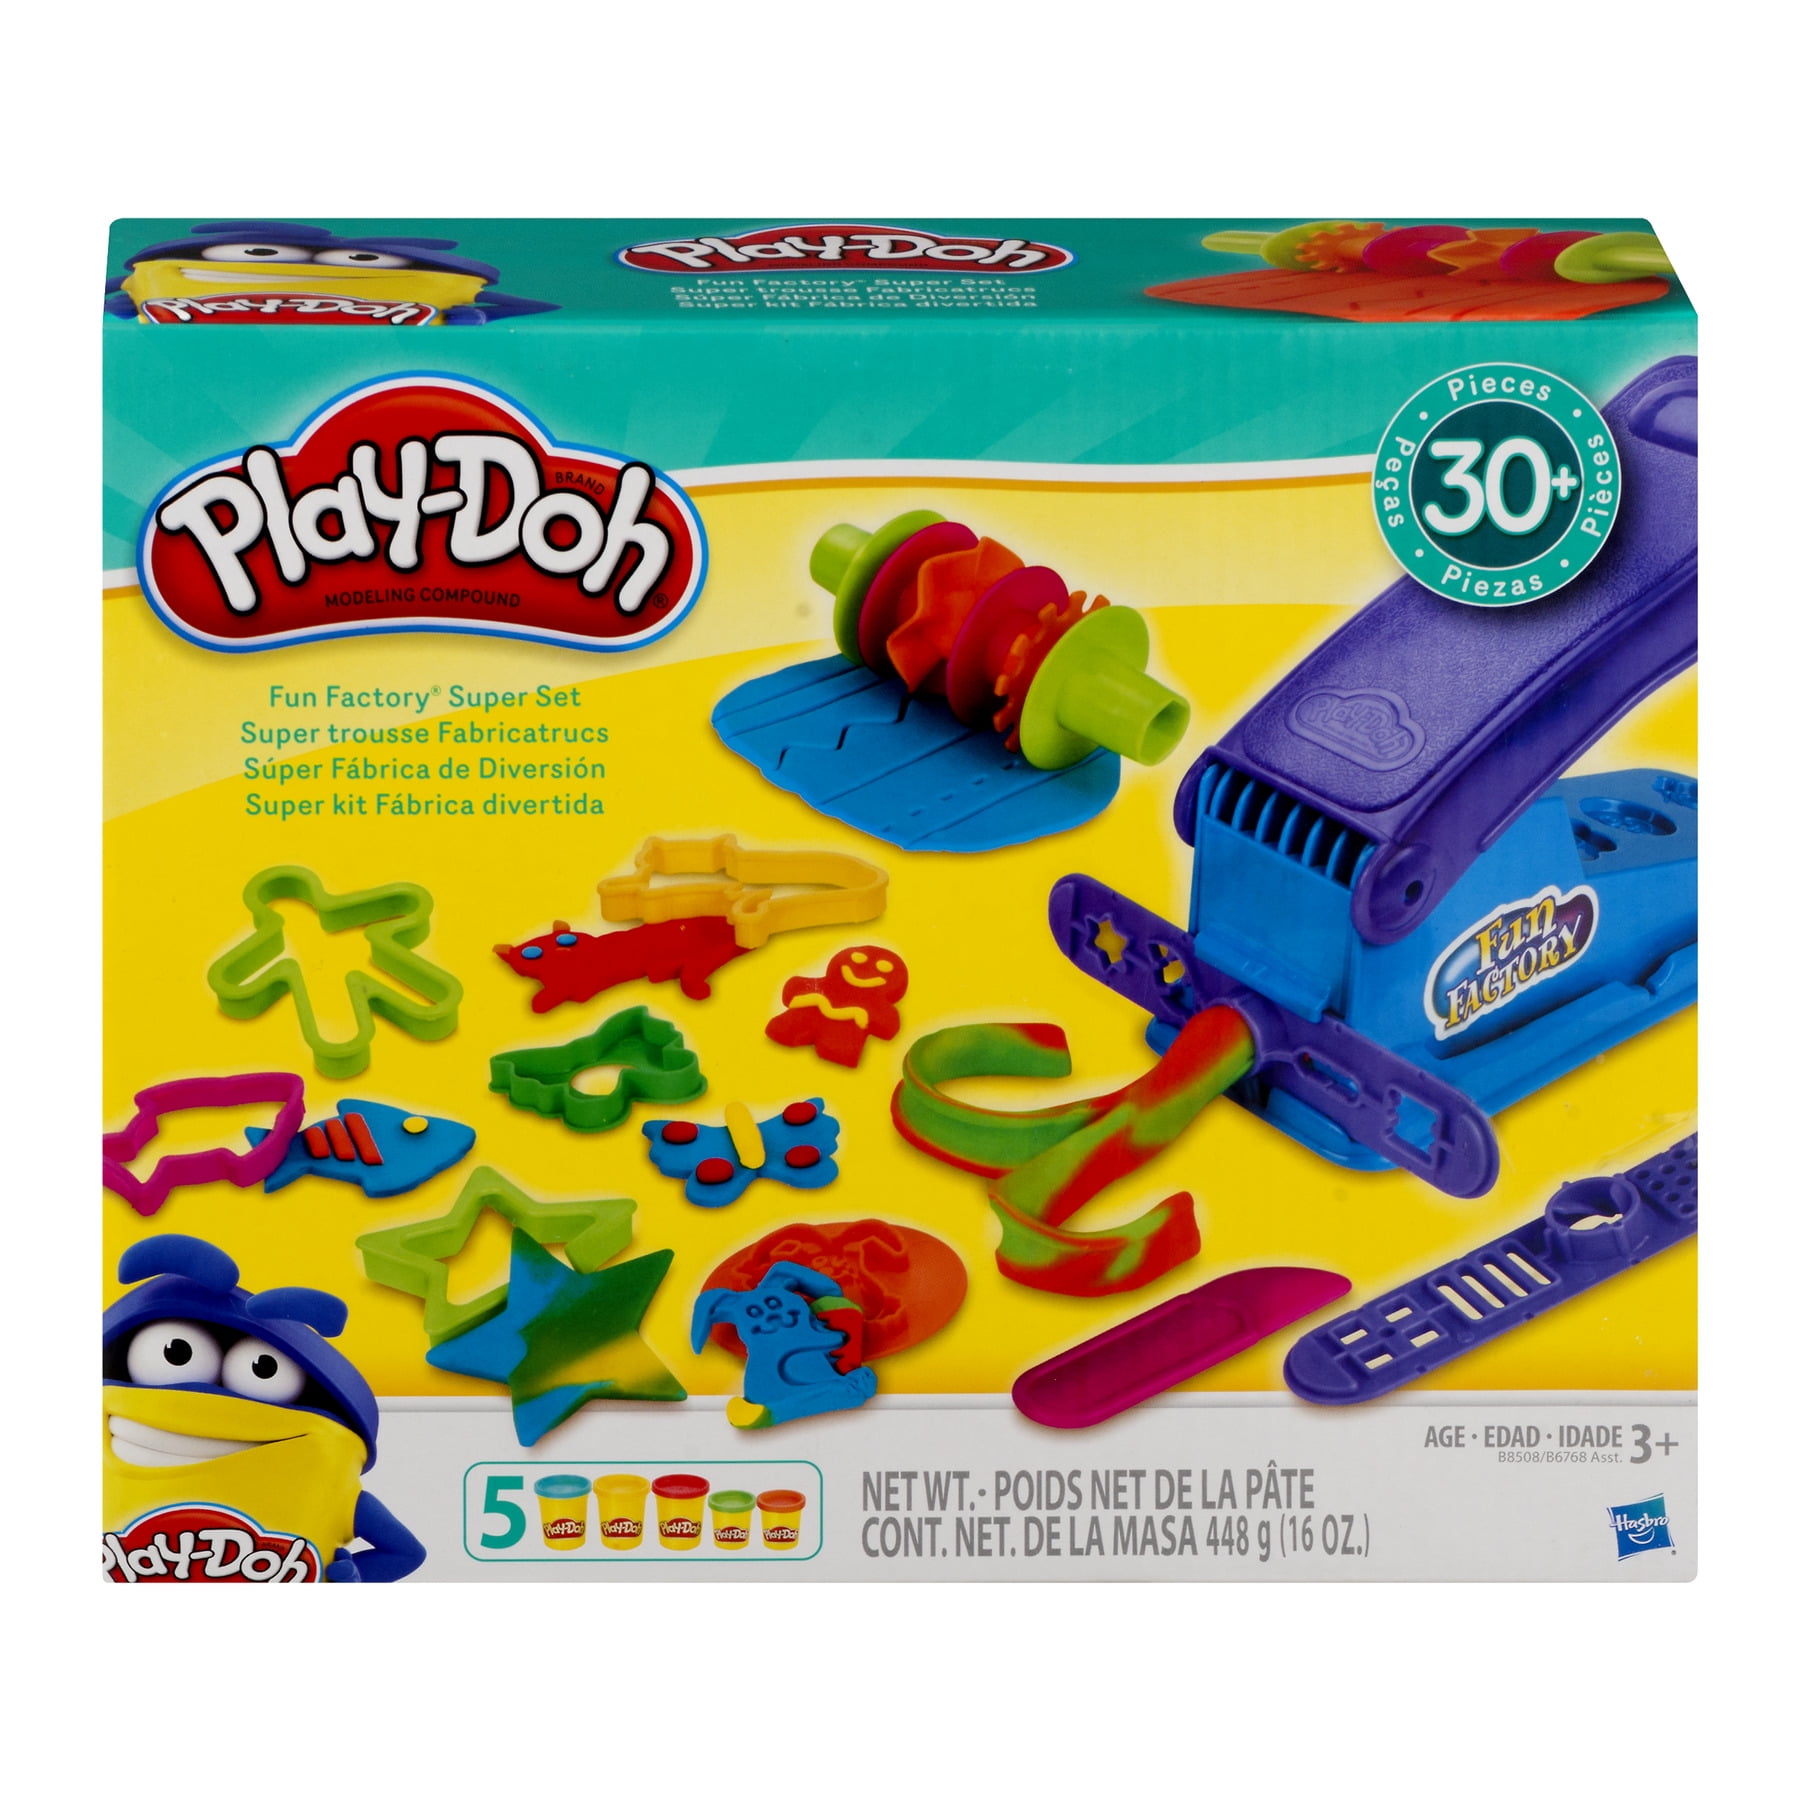 Play Doh Dough Clay Fun Factory Toy Kids Boys Game Playdough Gift Set Safe Color 